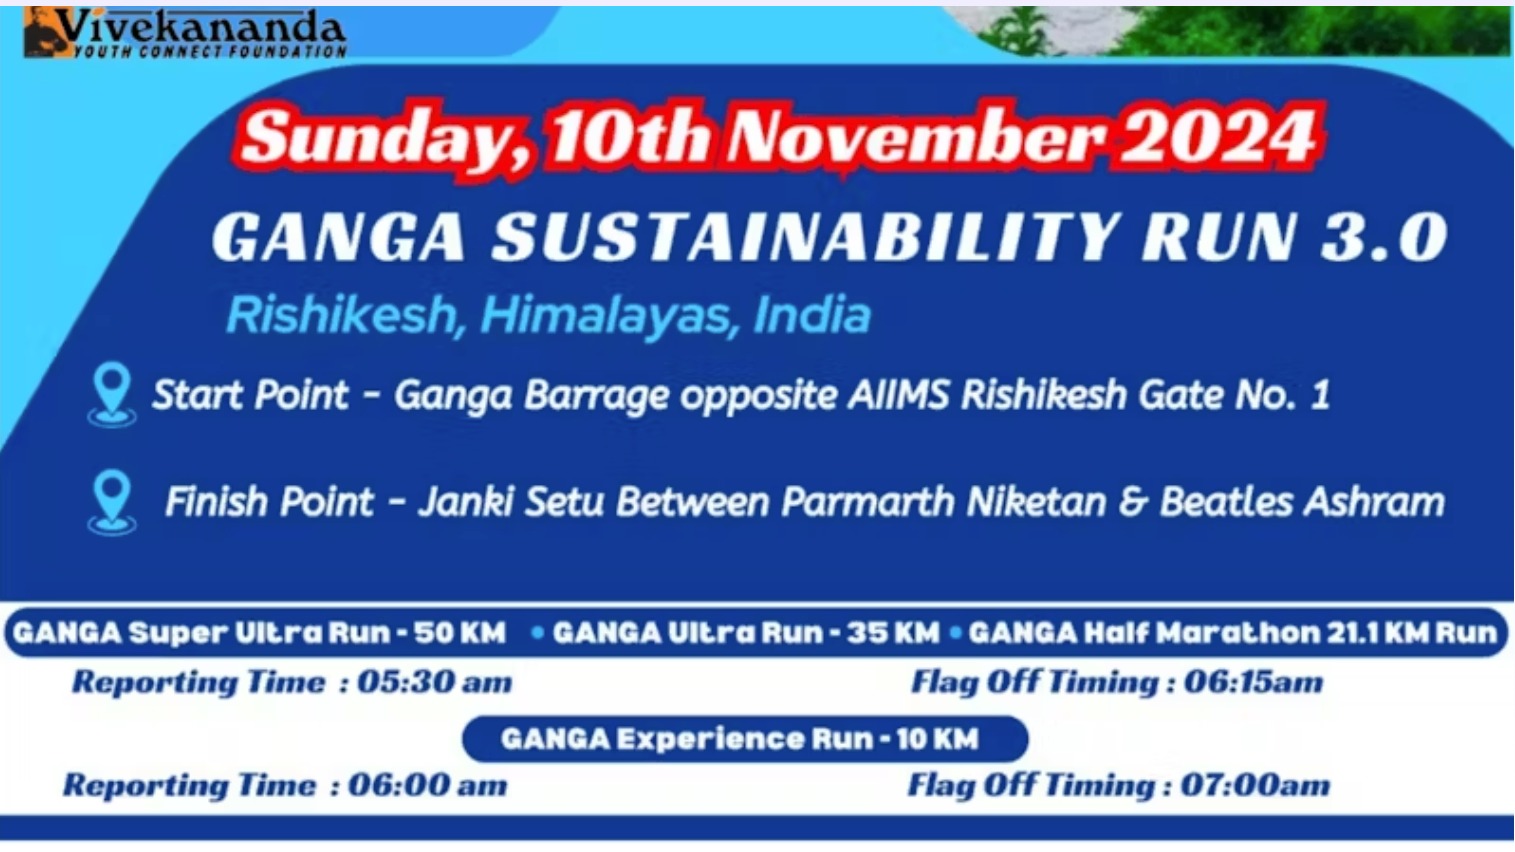 Ganga Sustainability Run - Rishikesh 2024